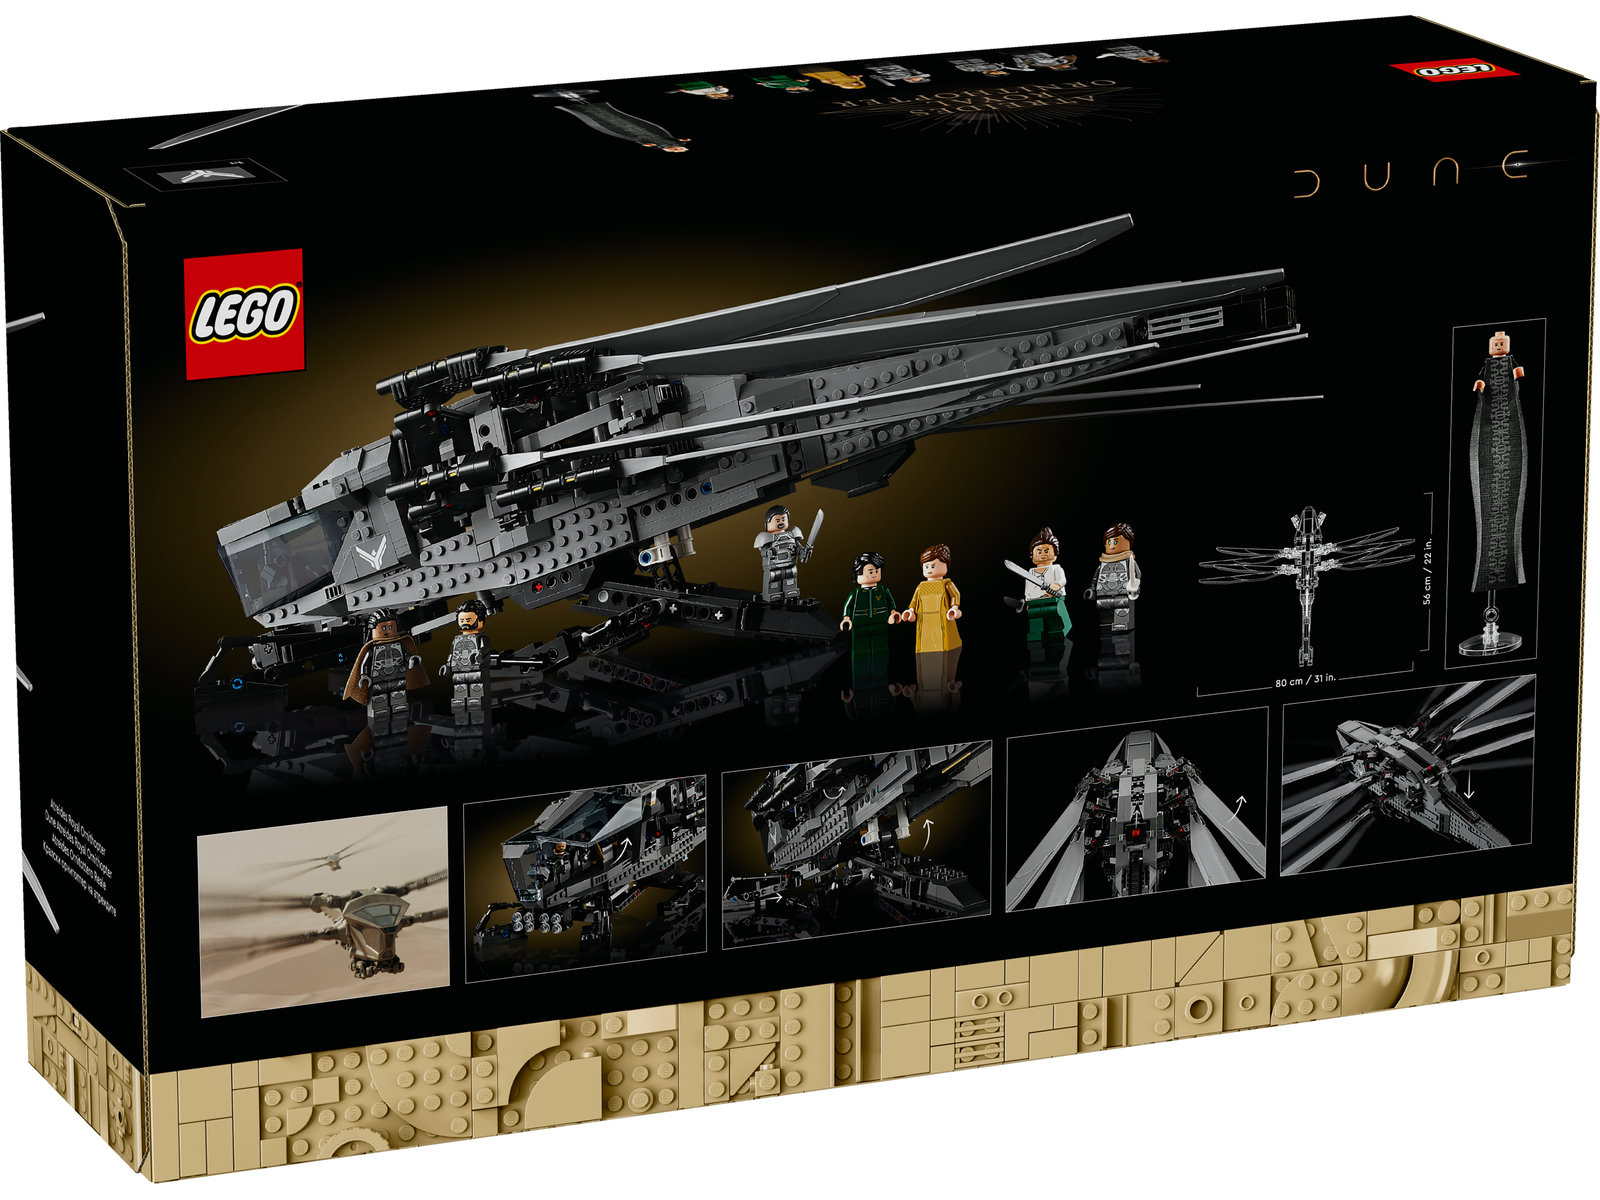 LEGO® Icons 10327 - Dune Atreides Royal Ornithopter